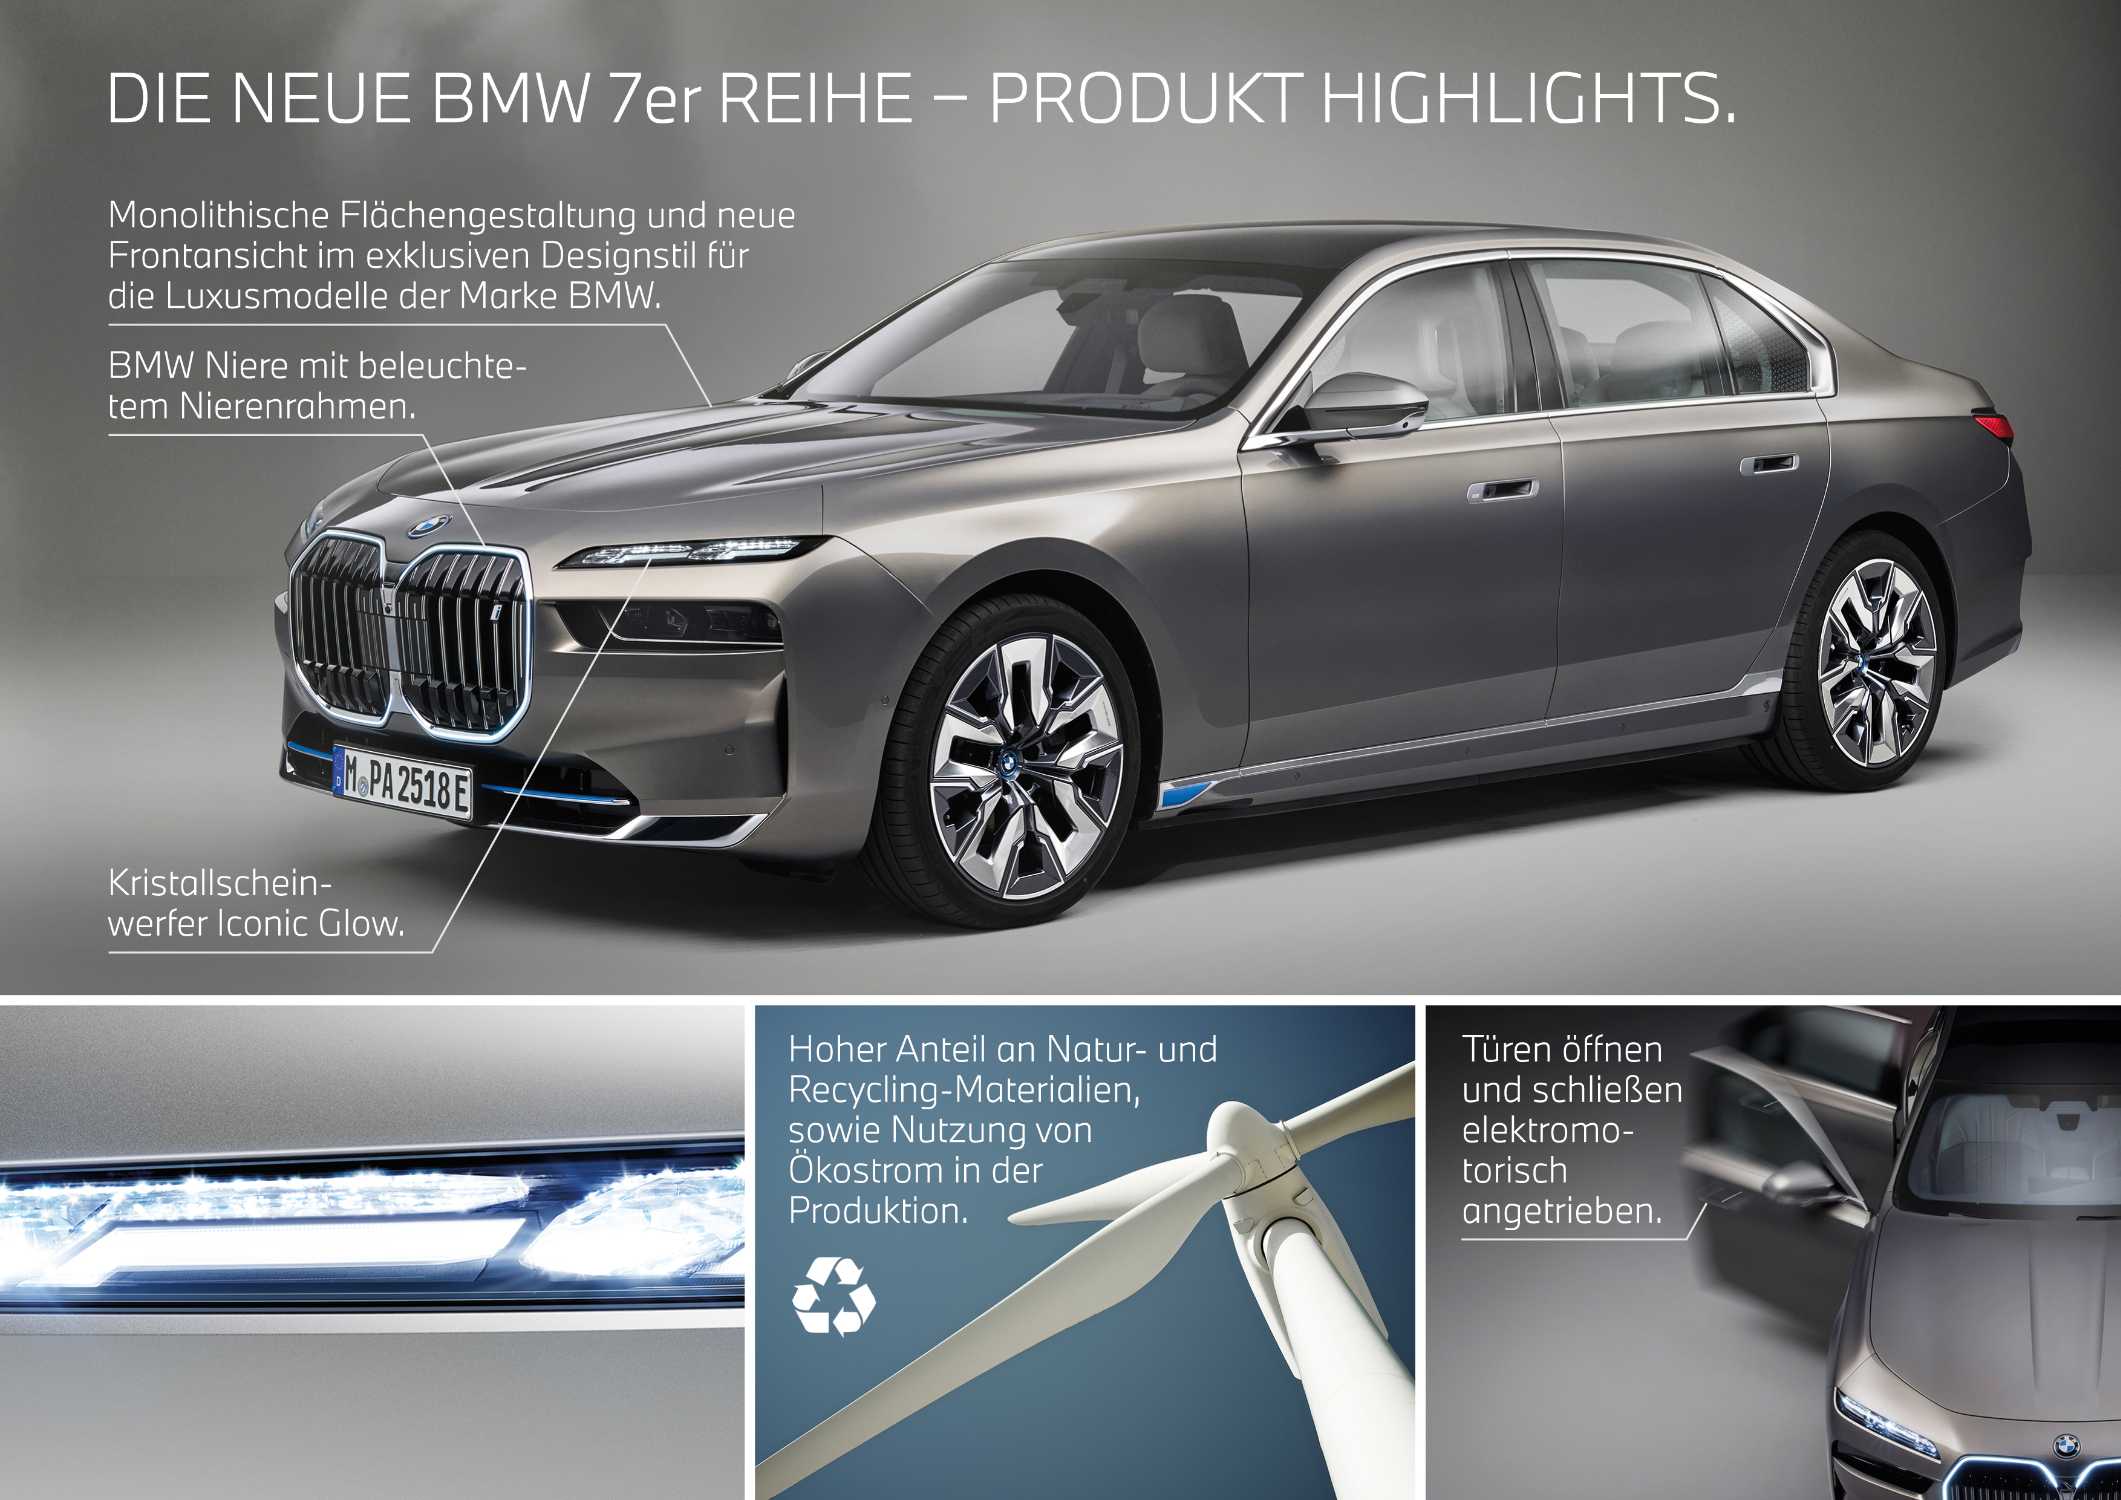 Die neue BMW 7er Reihe - Highlights (04/2022).